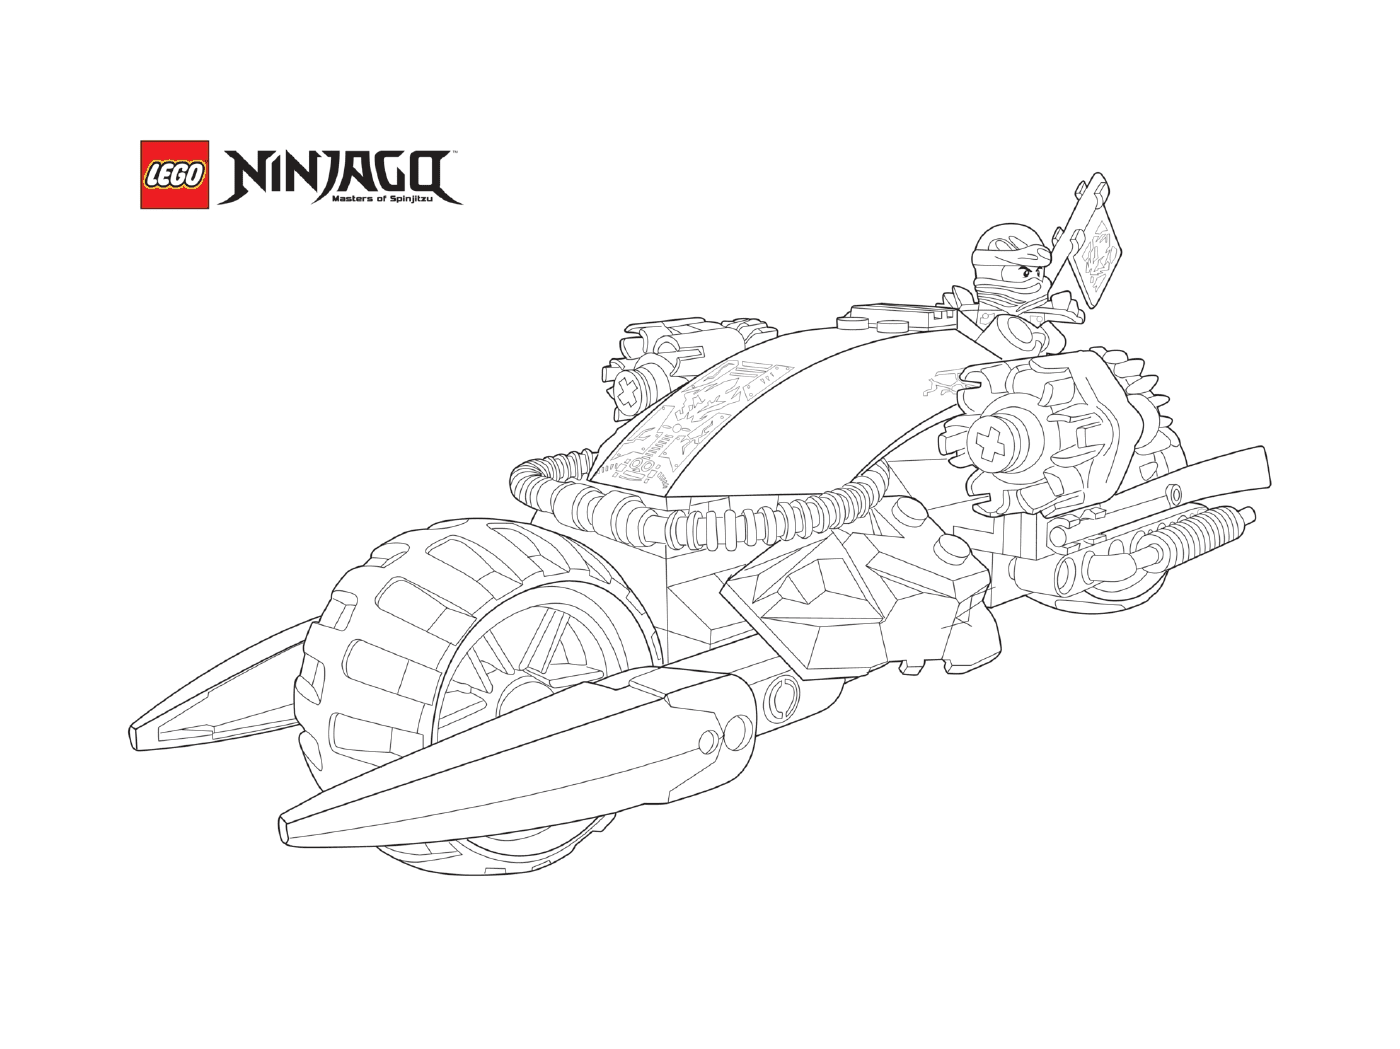  Ninjago Lego in motorcycle mode 